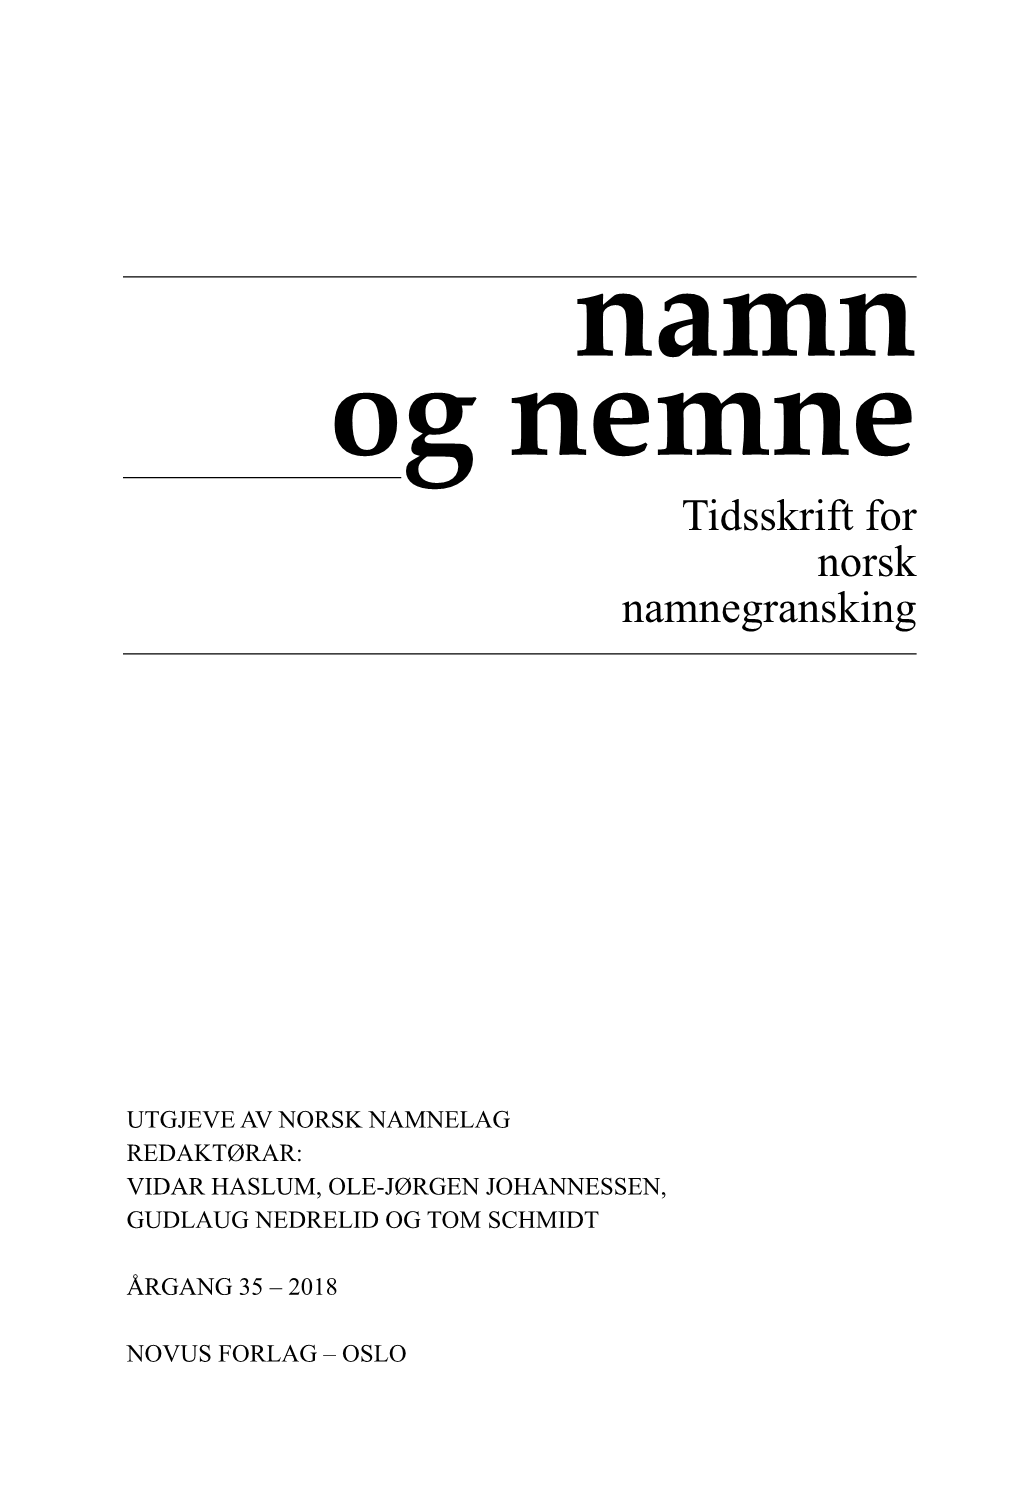 Namn Og Nemne 2018 Materie 21.01.19.Qxp Layout 1 24.01.2019 15:54 Side 1